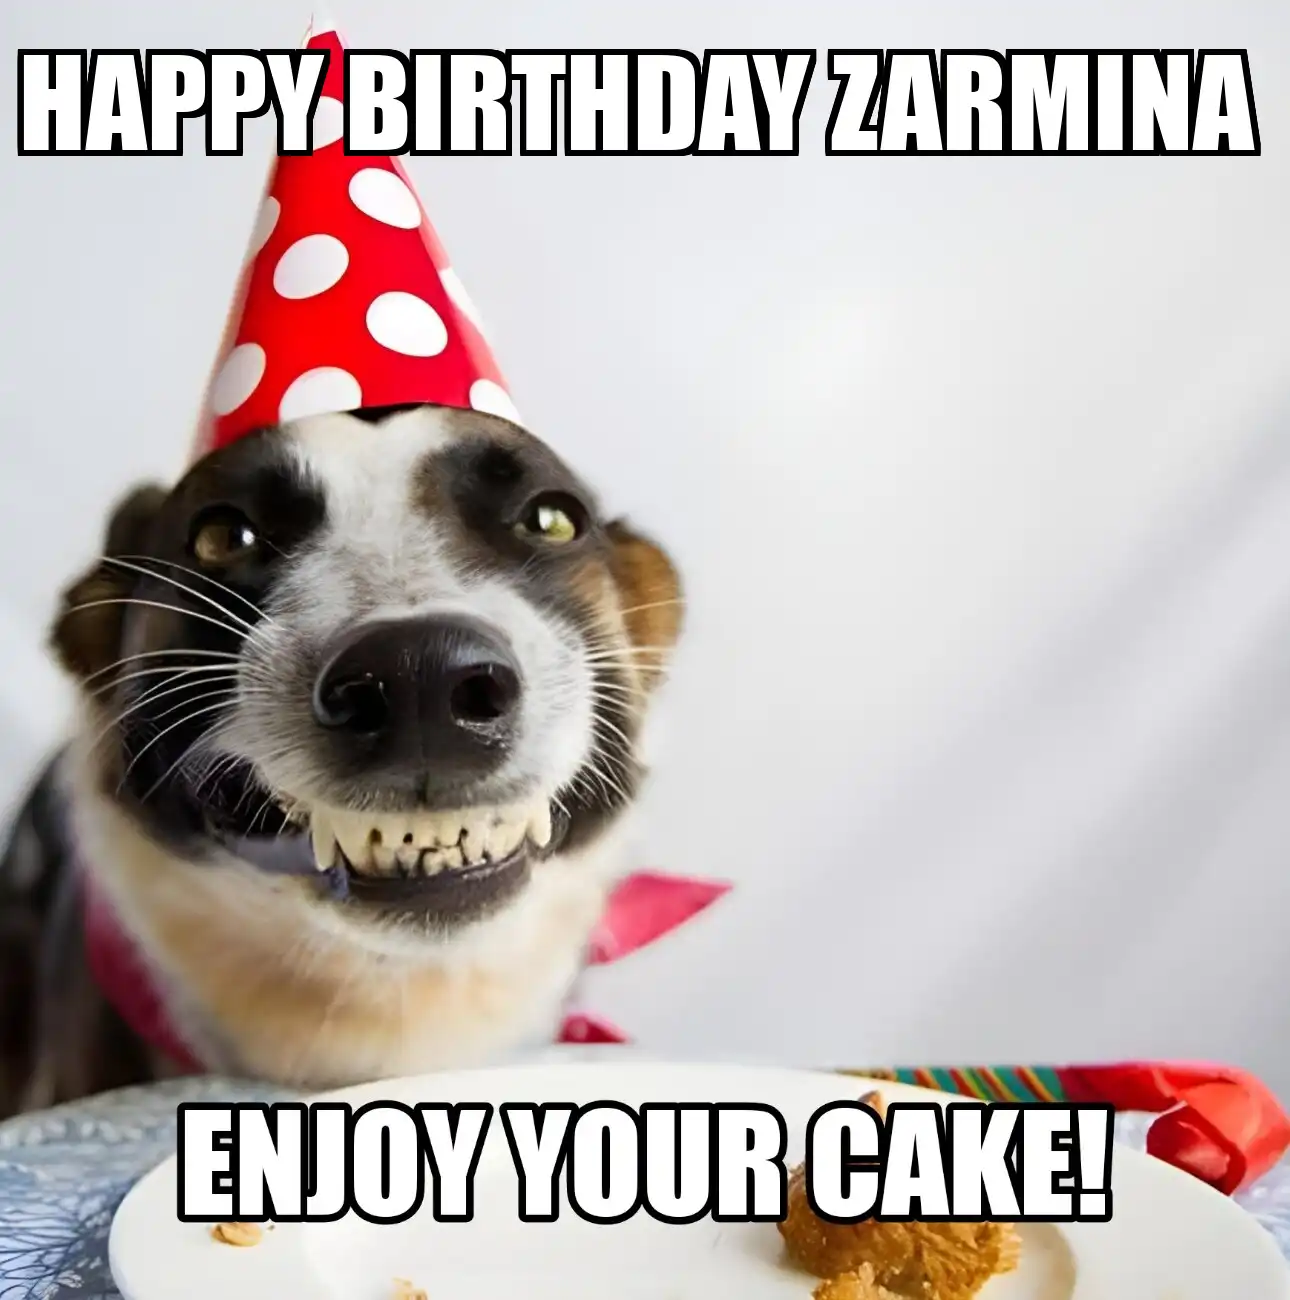 Happy Birthday Zarmina Enjoy Your Cake Dog Meme